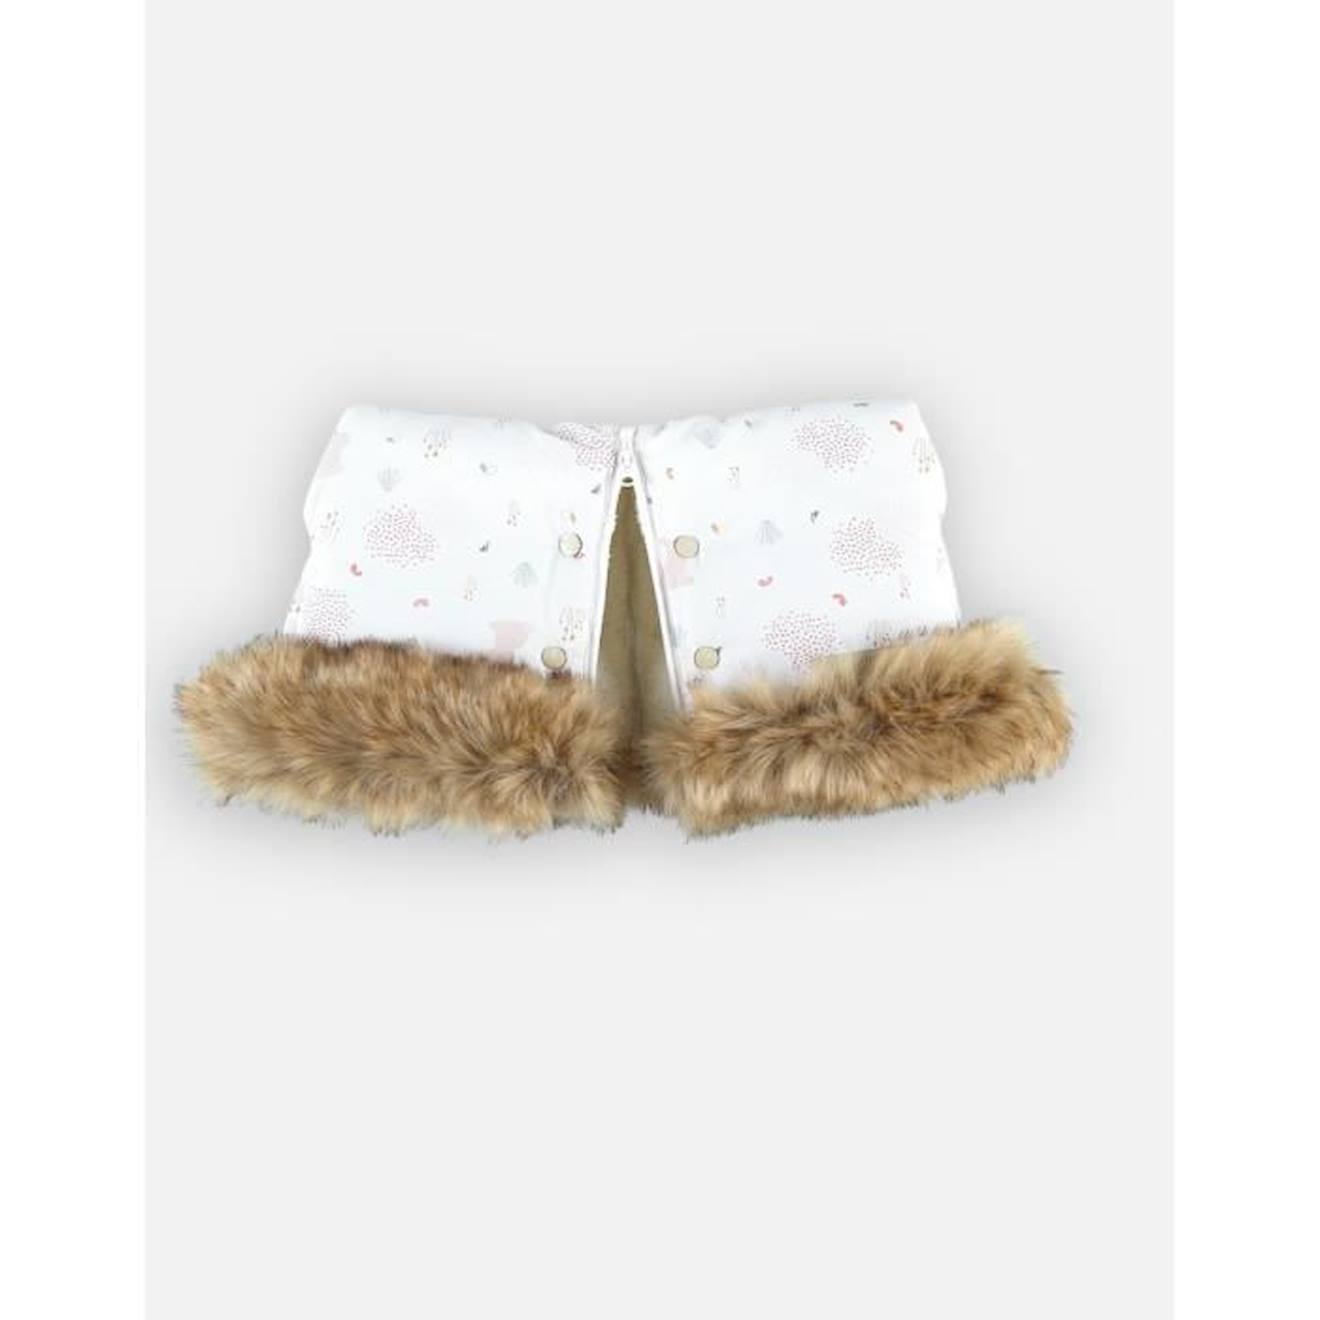 Gants de Poussette,Moufles Poussette avec polaire chaude et coton